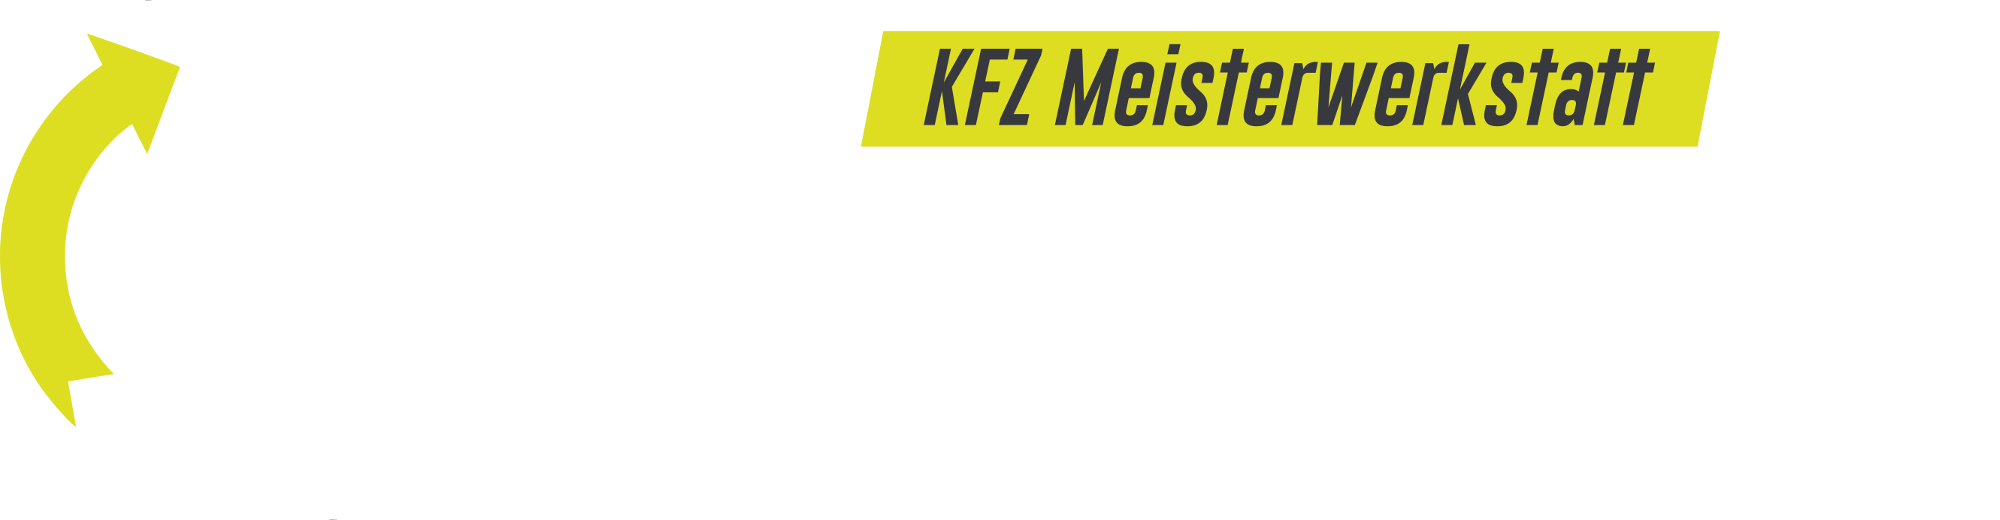 DIE AUTOKORREKTUR - KFZ Meisterwerkstatt e.U.